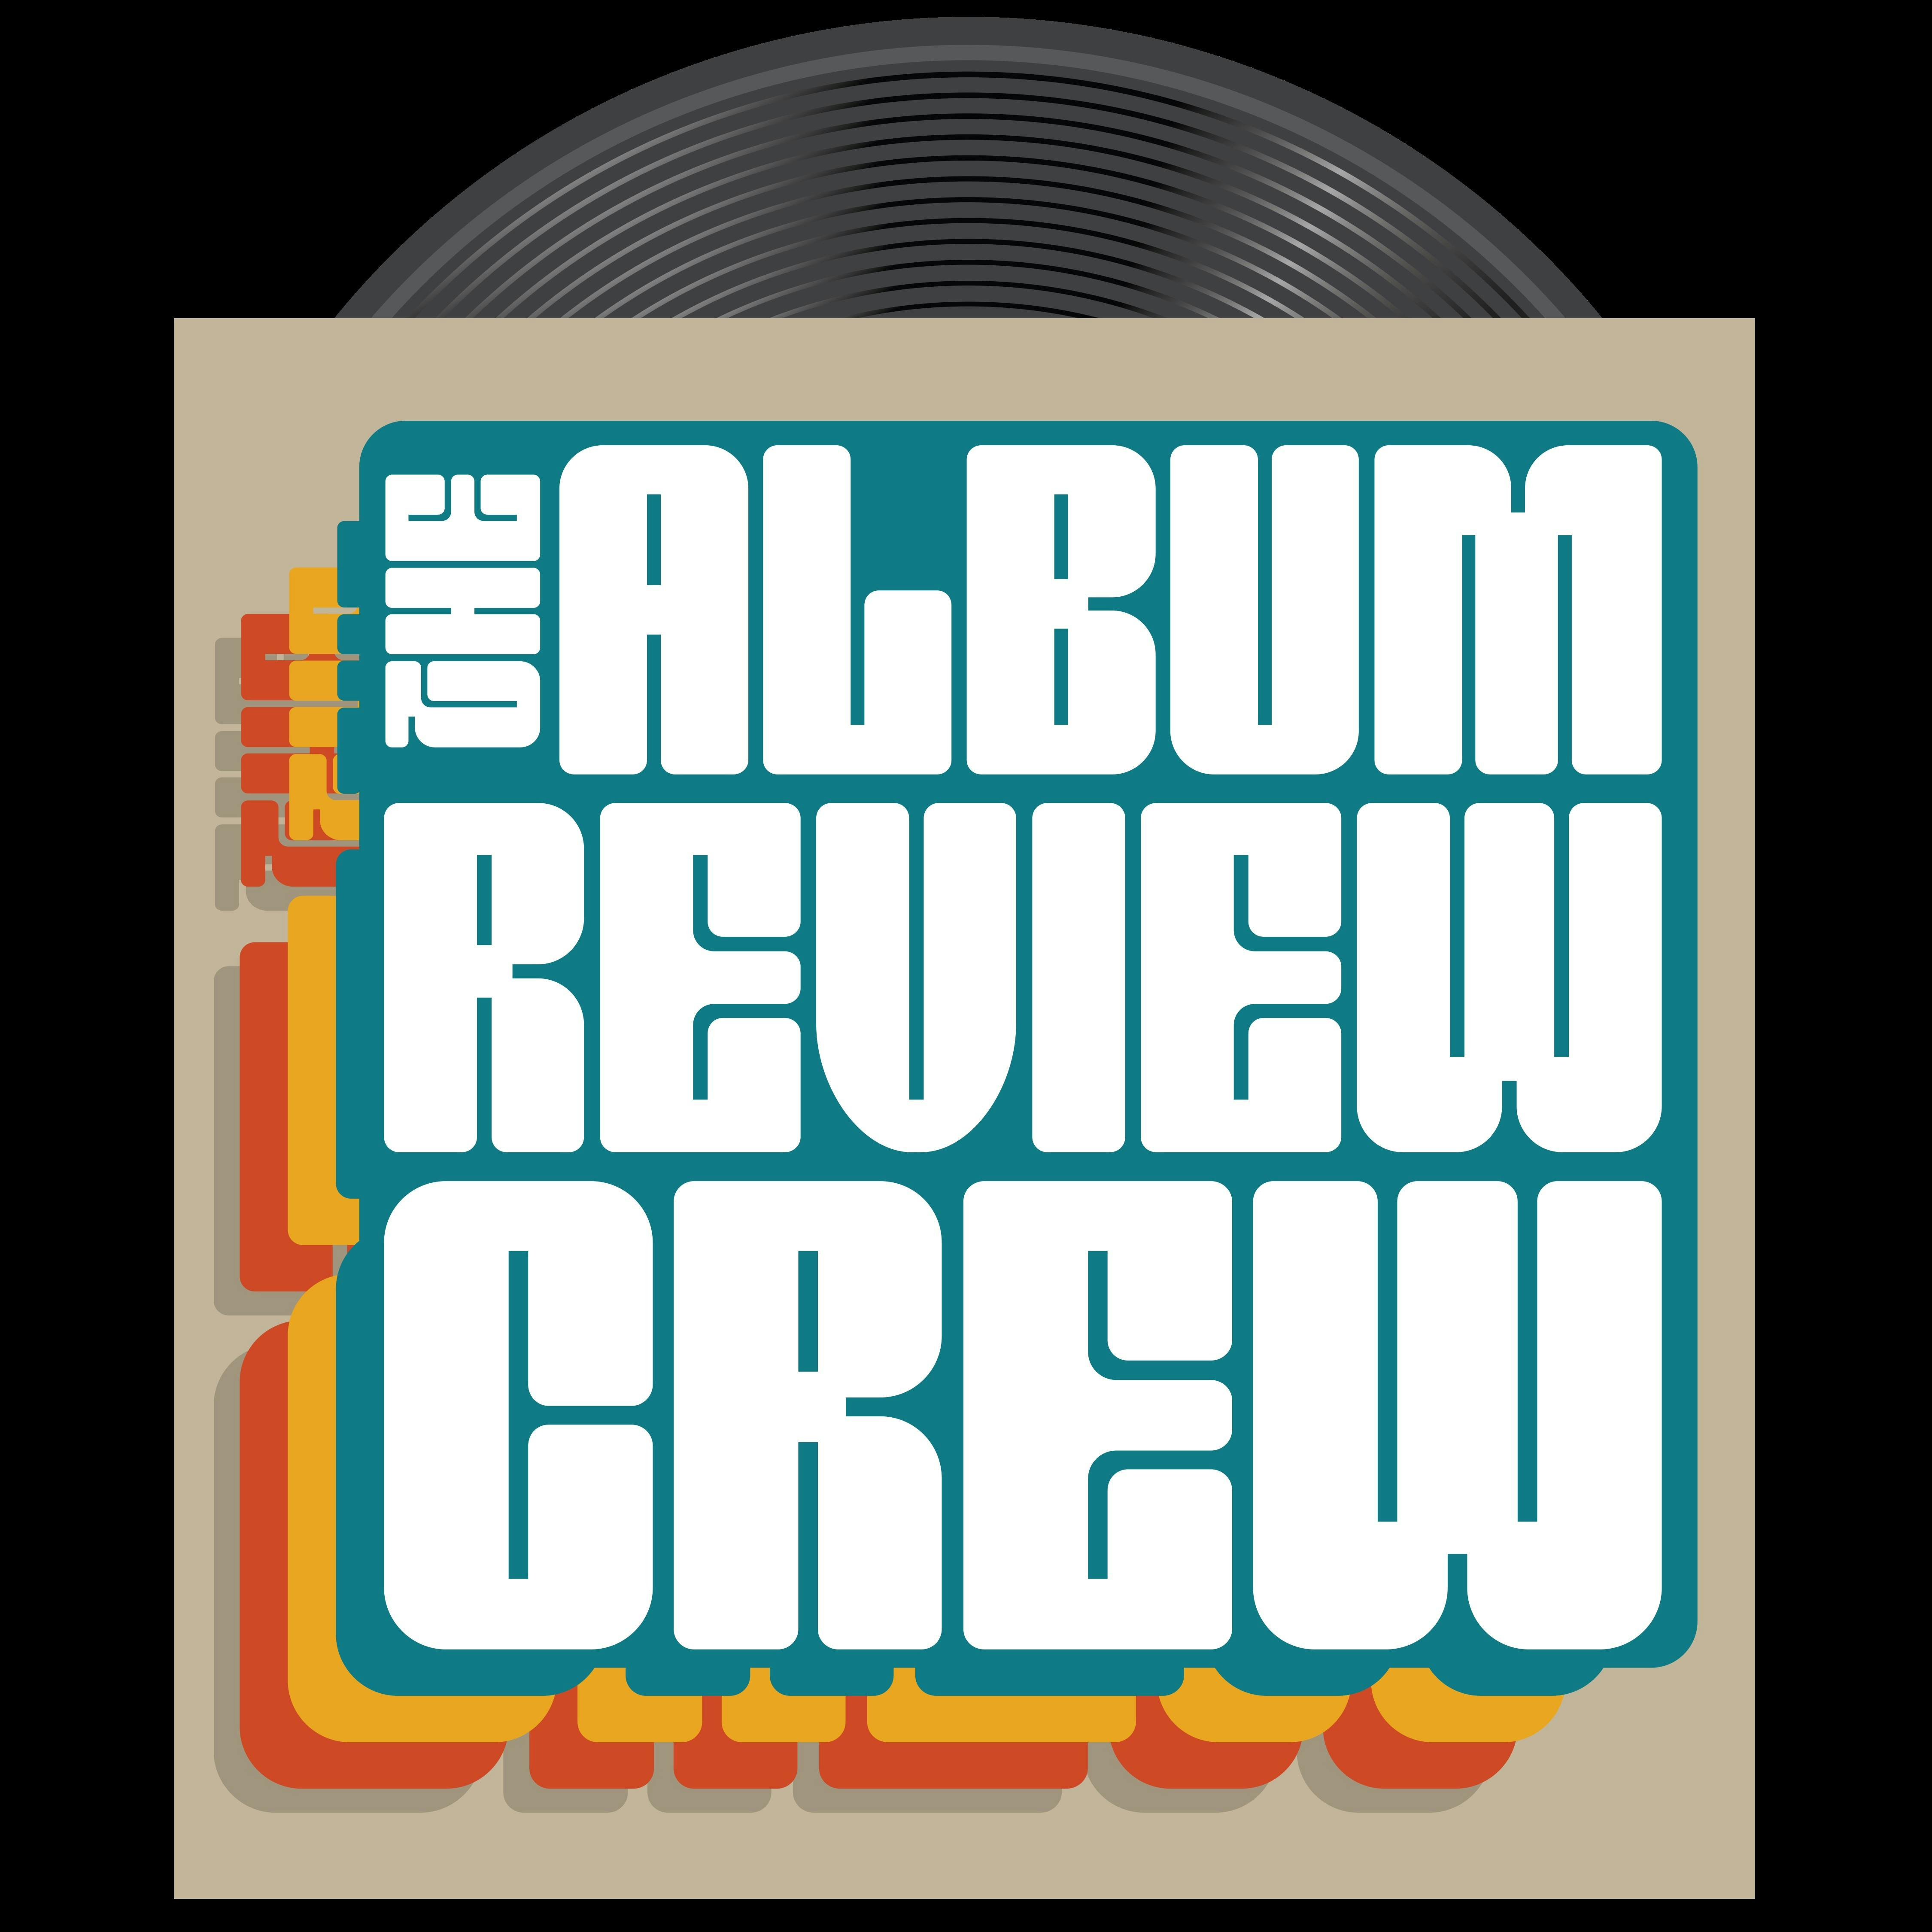 Album Review Crew Episode 52 ”Vision Quest Soundtrack” With Chris Jericho